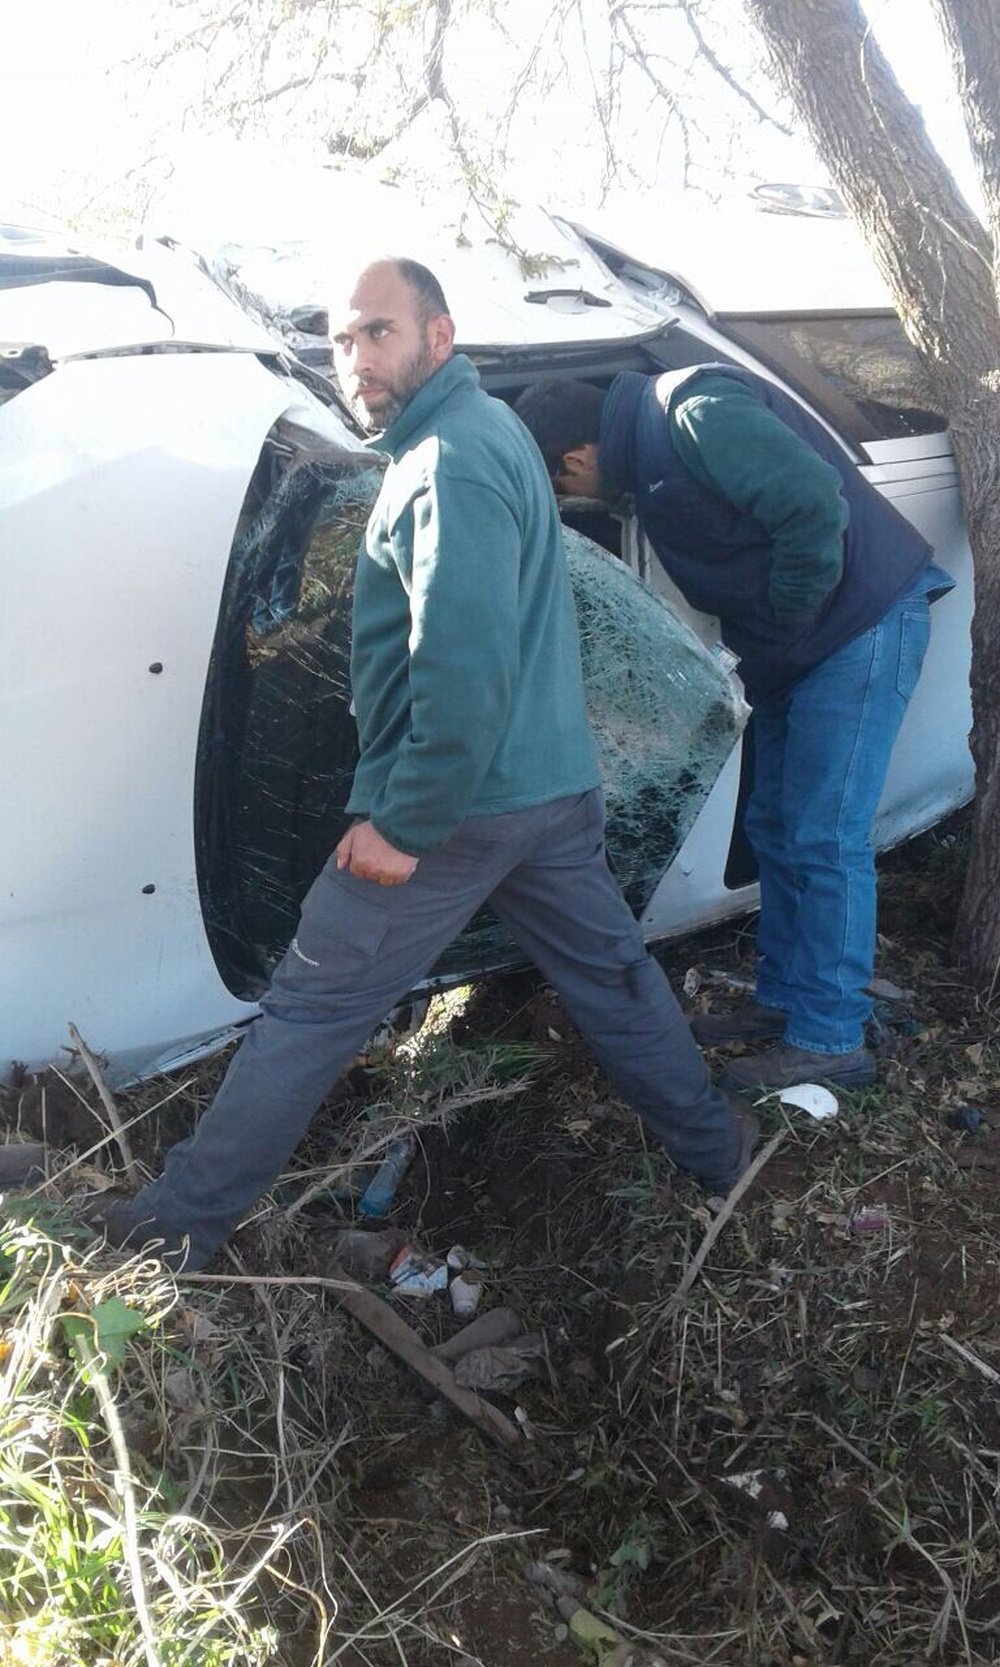 El vehículo de Cobos volcó cuando se dirigía a un entrenamiento. Twitter/FedeAcosta